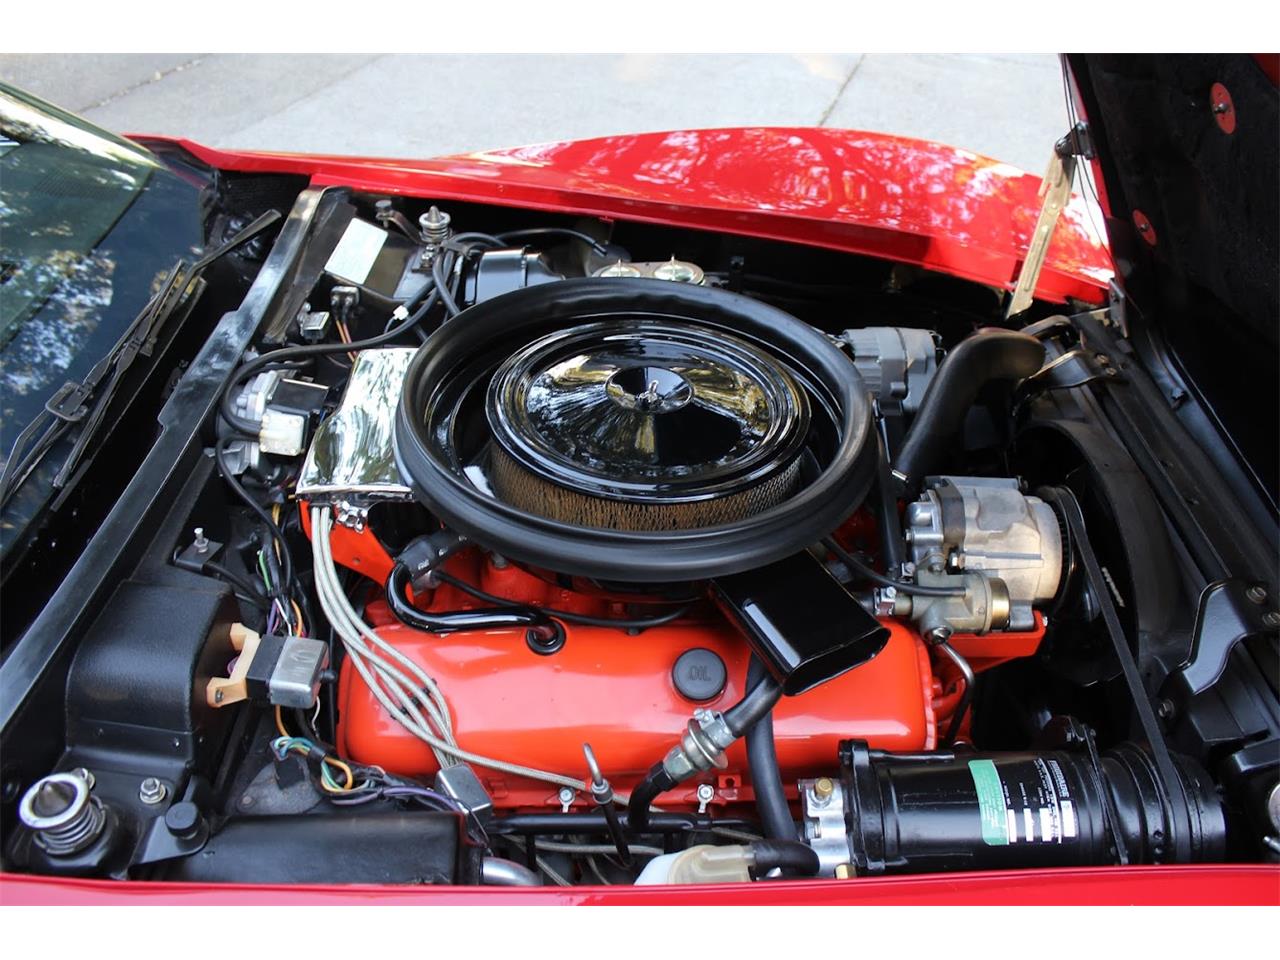 454cid big-block V8 engine